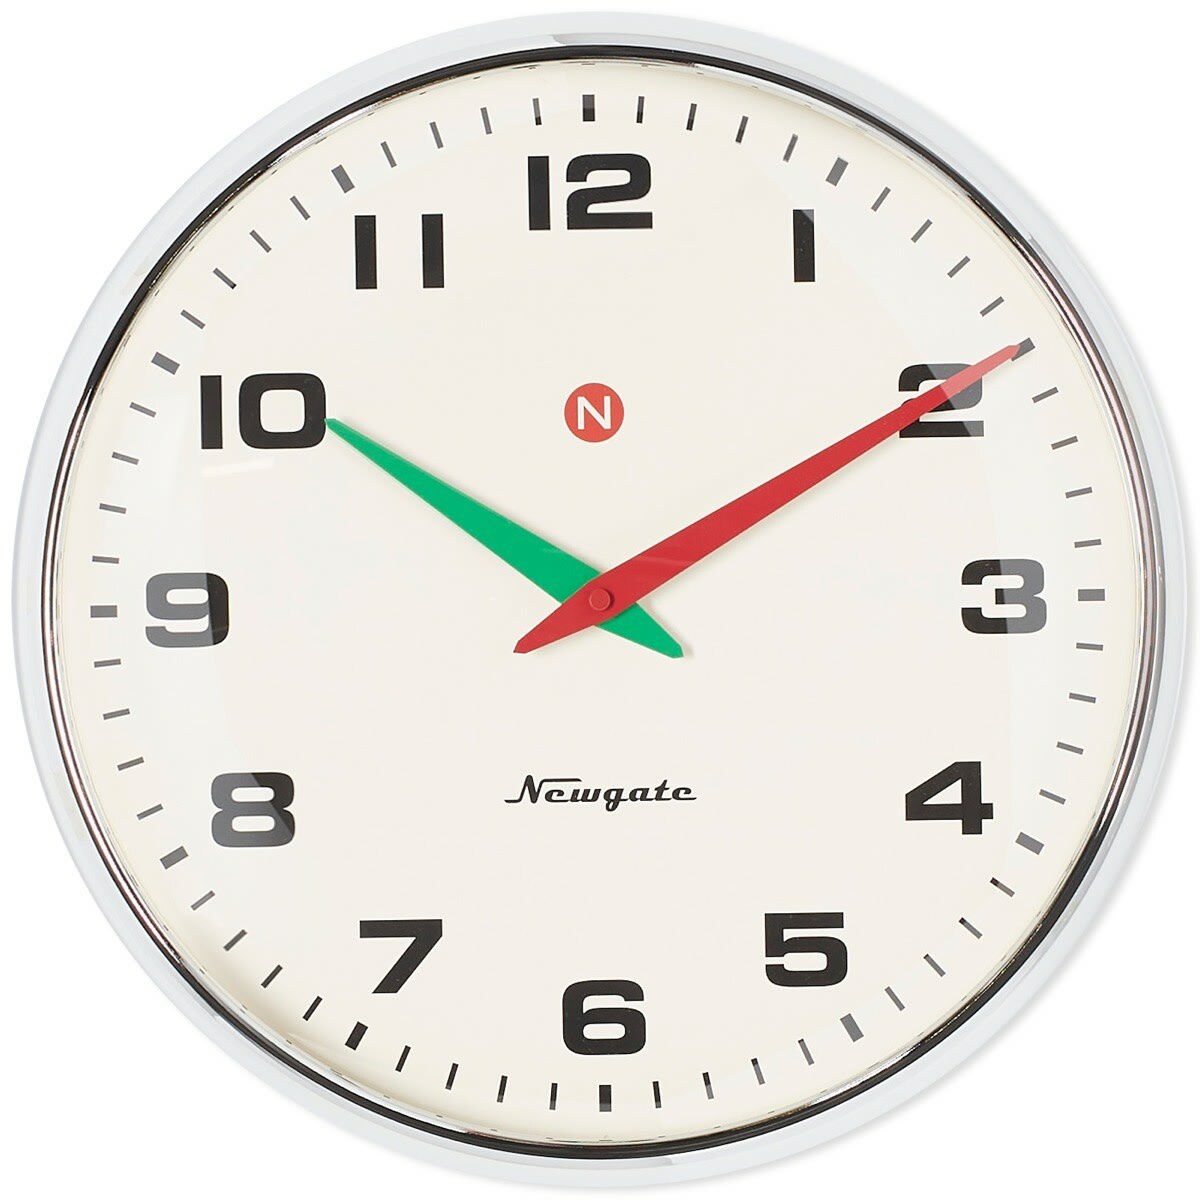 Photo: Newgate Clocks Superstore Wall Clock in Chrome